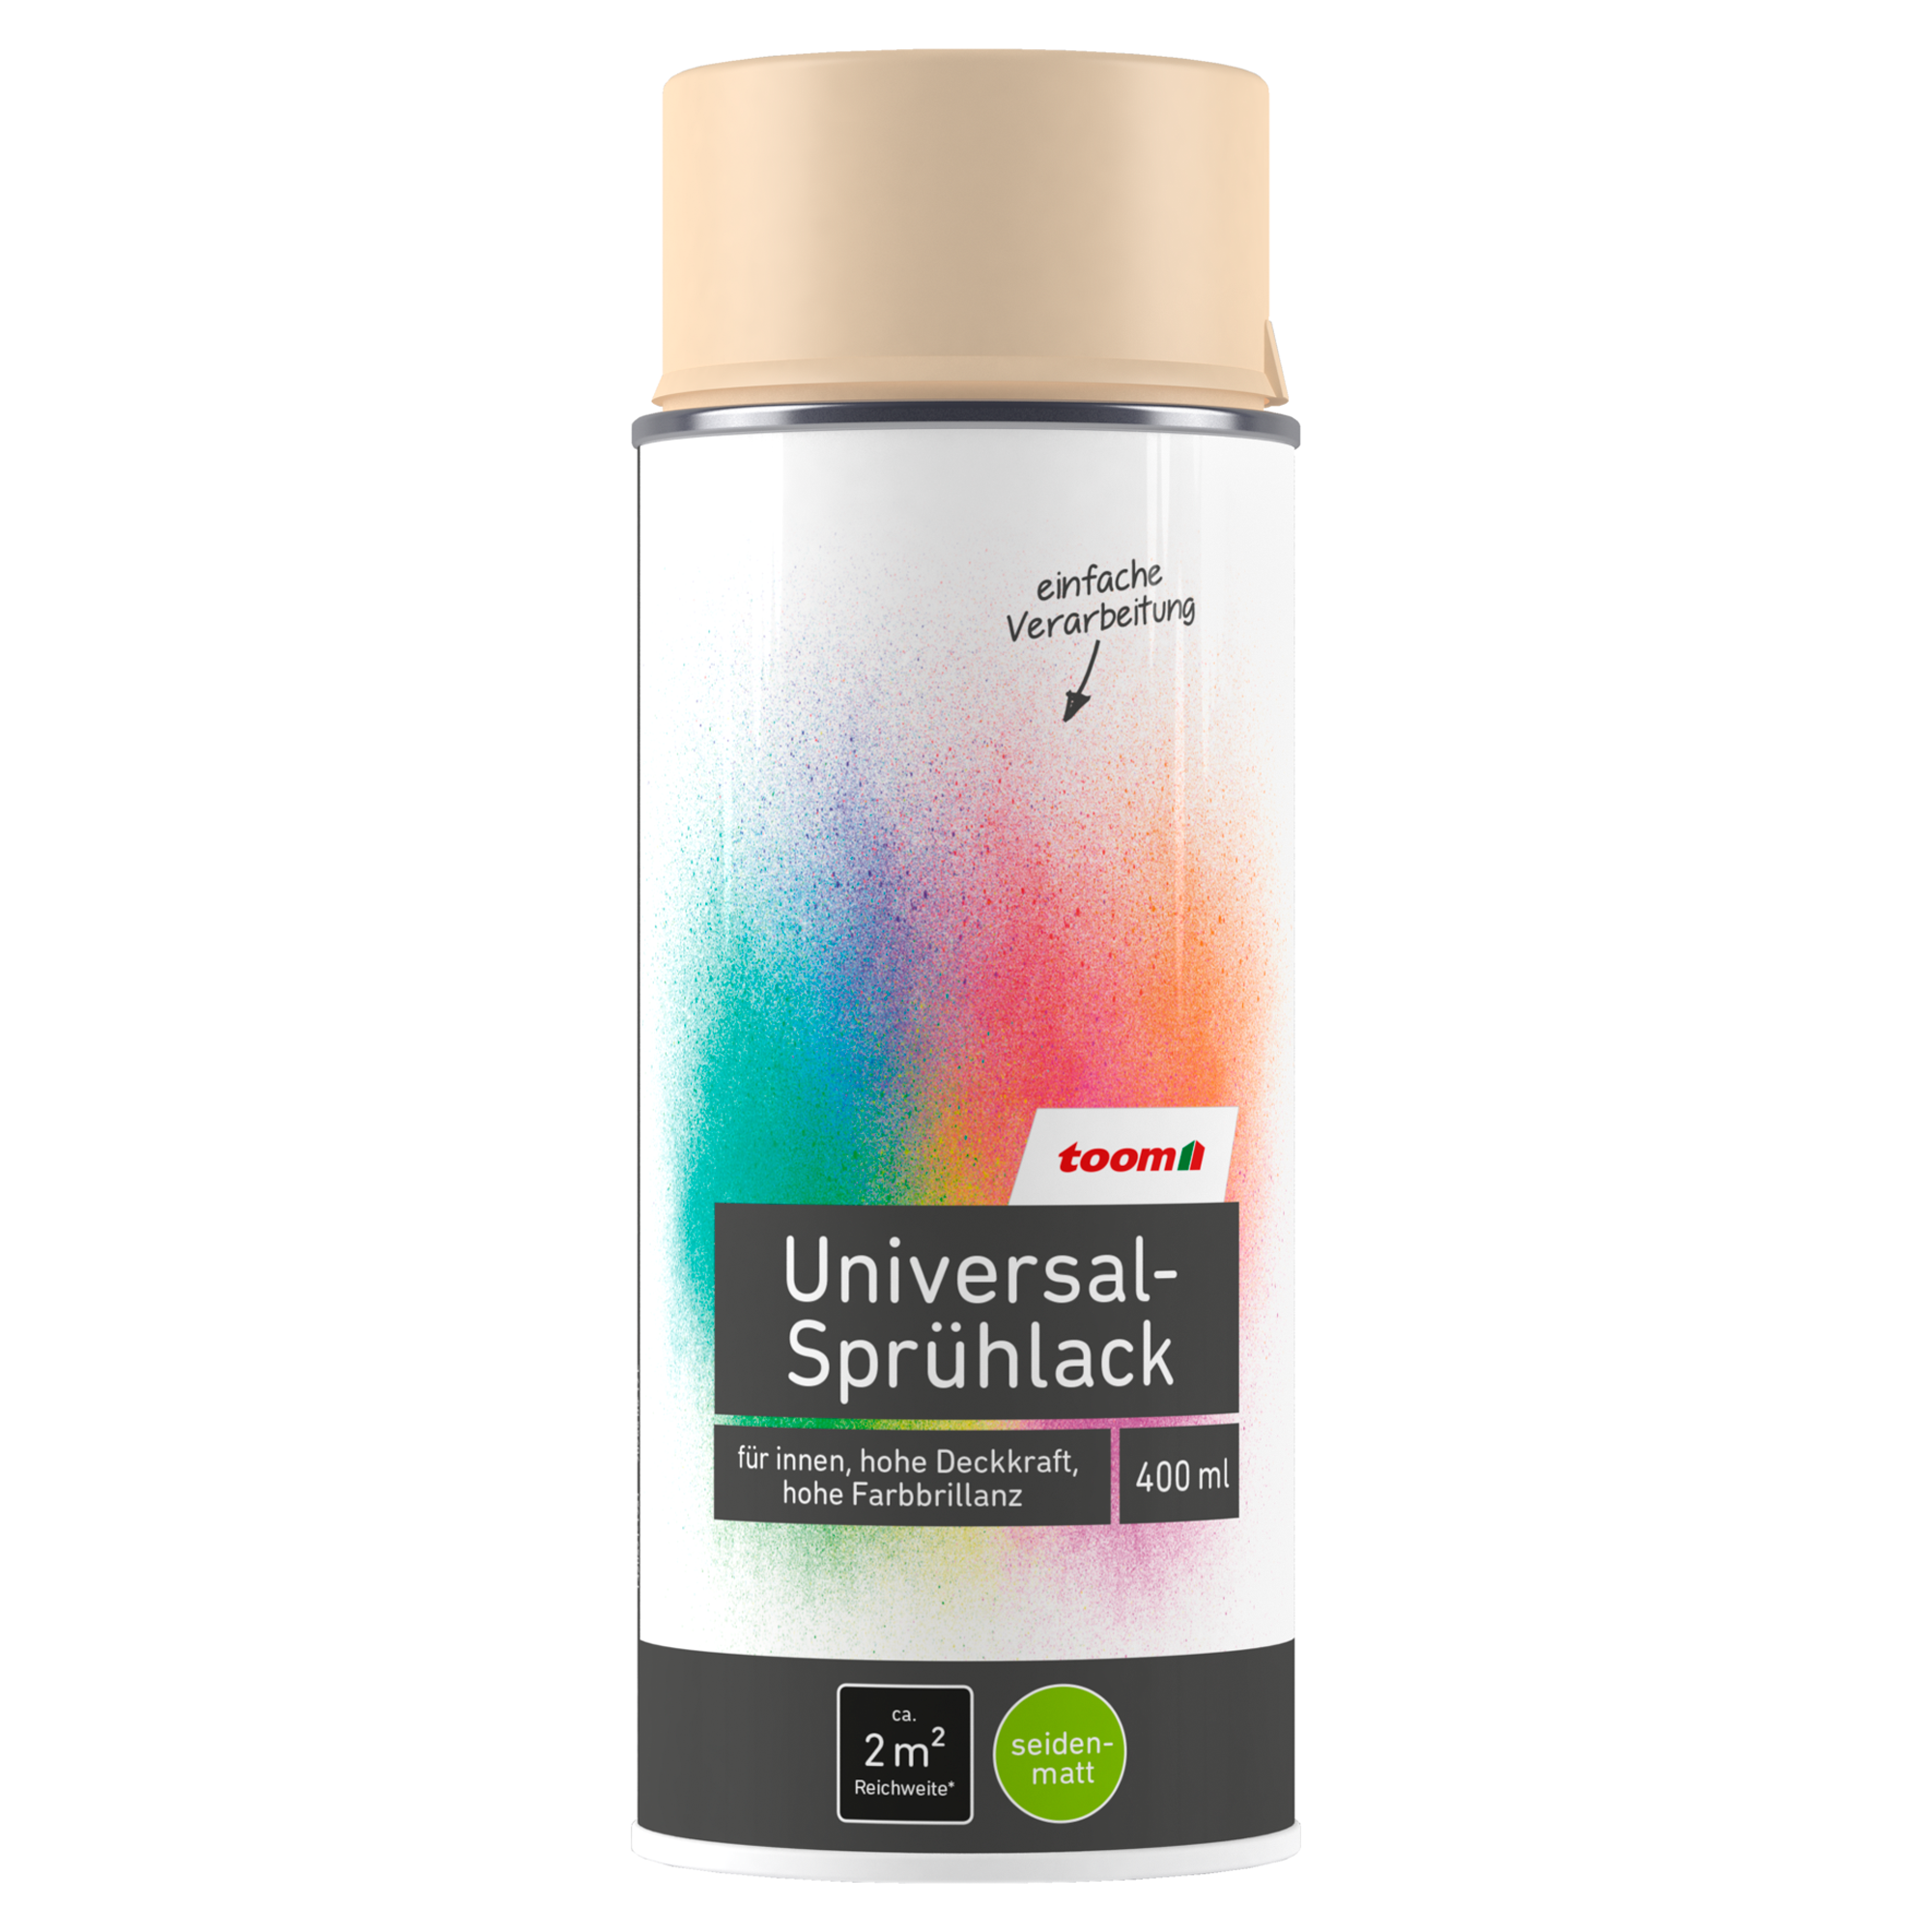 Universal-Sprühlack 'Sonnenstrahl' elfenbeinfarben seidenmatt 400 ml + product picture